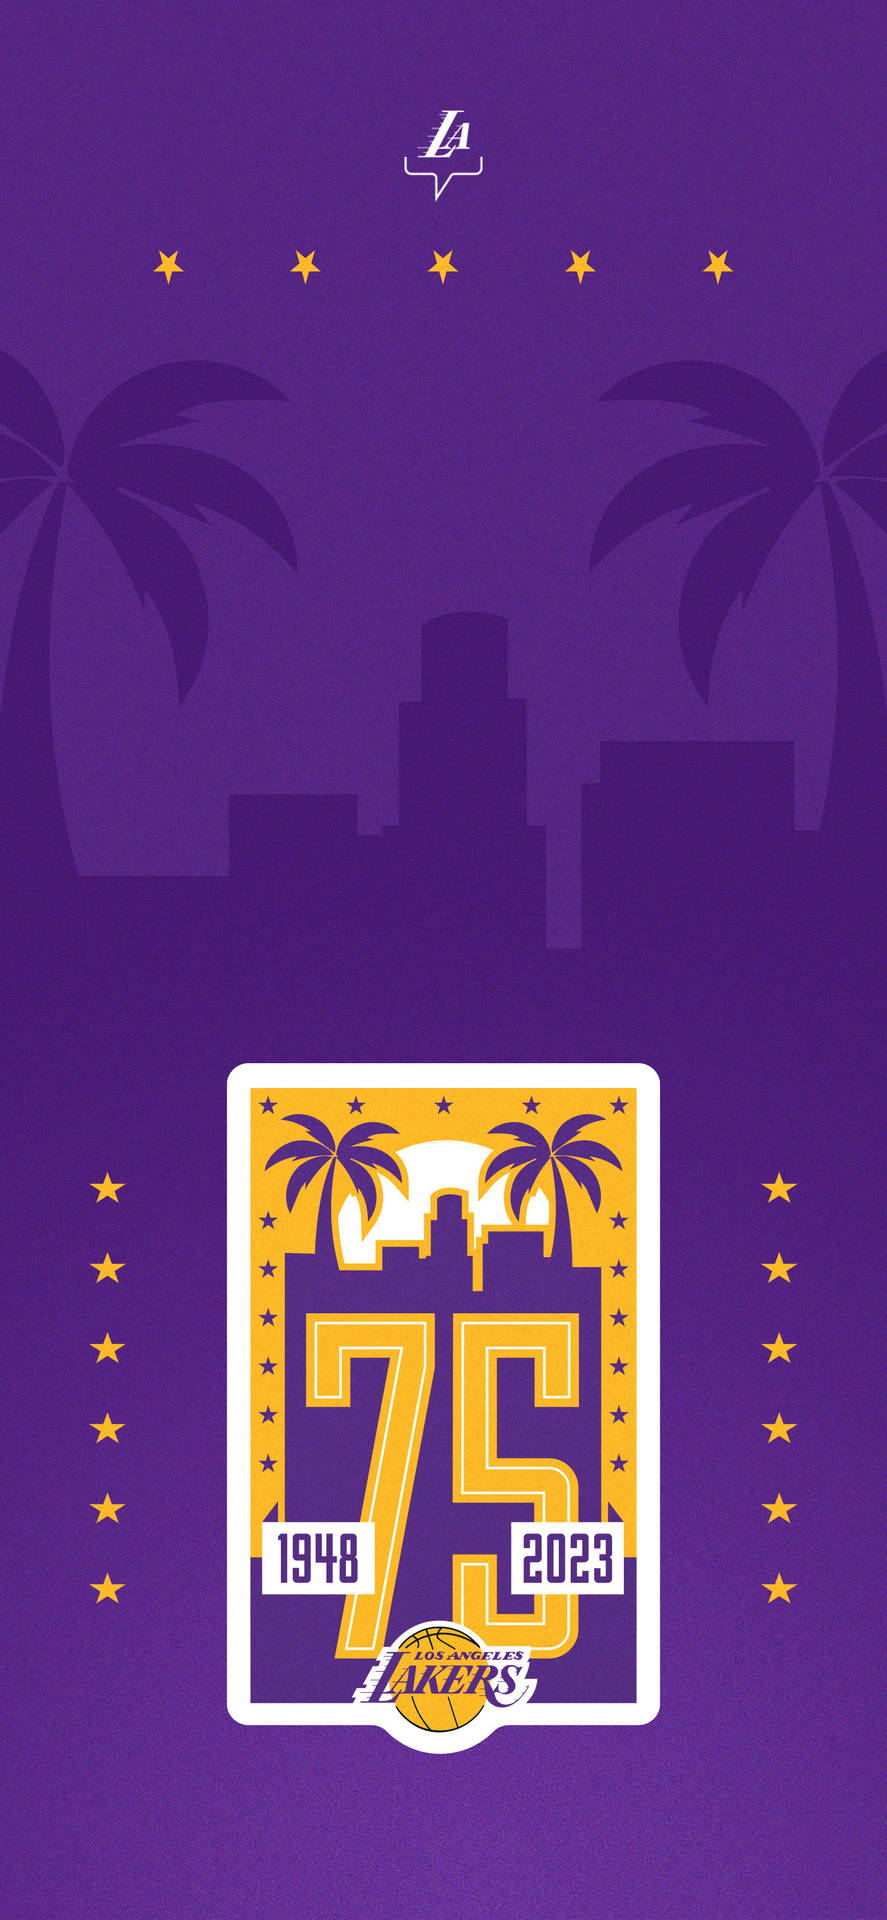 Liebensie Lakers Basketball? Zeigen Sie Ihren Teamstolz Mit Diesem Festlichen Lakers Iphone Wallpaper! Wallpaper